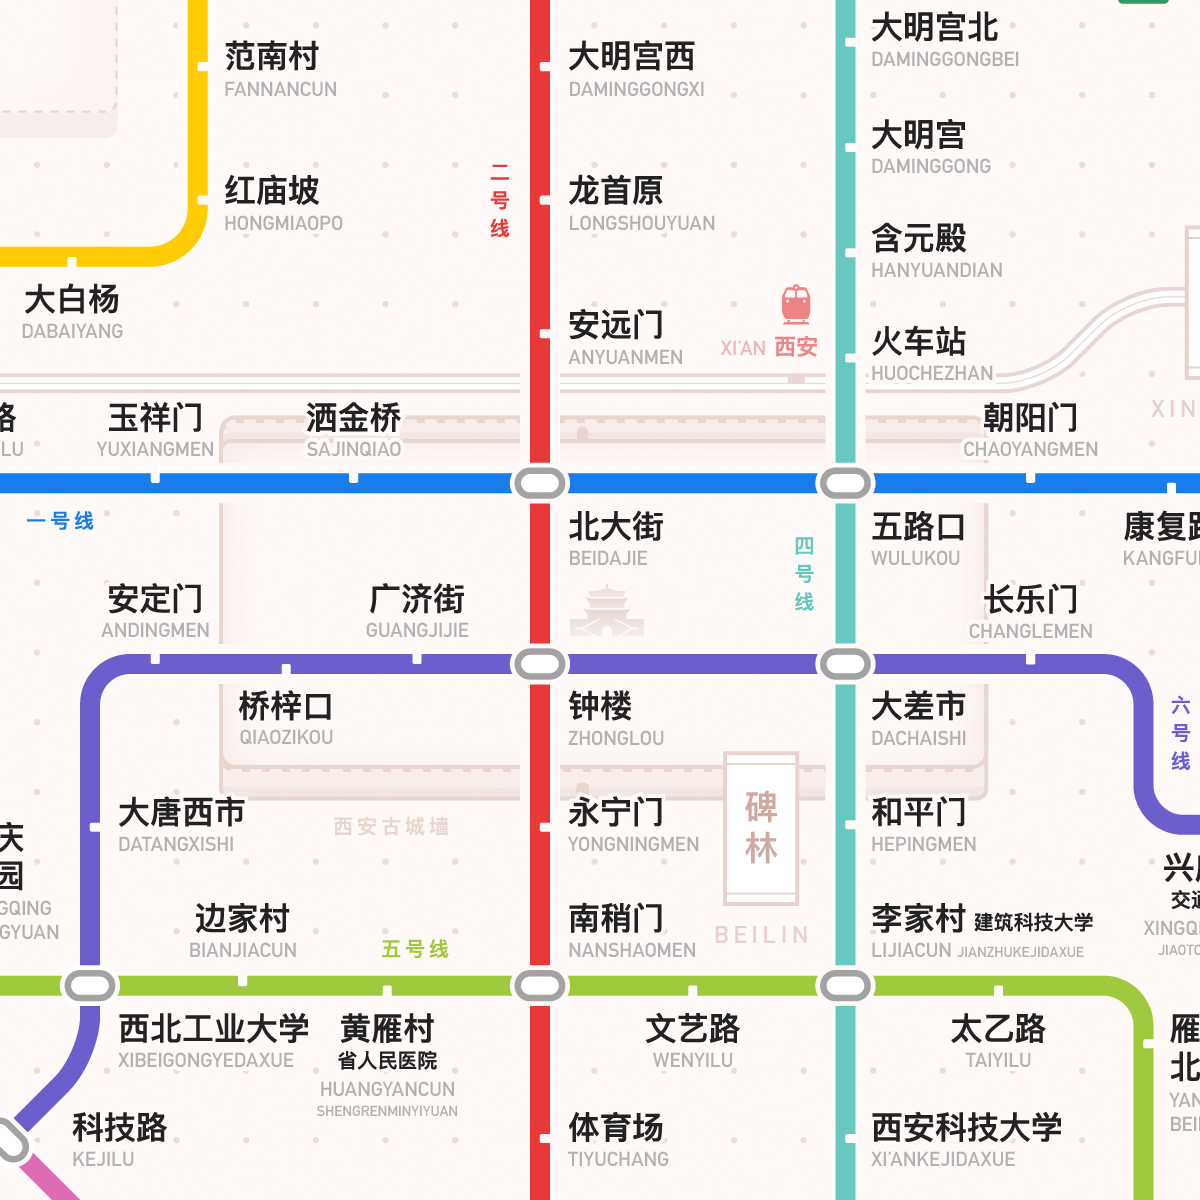 西安轨道交通图 2020 / 2025